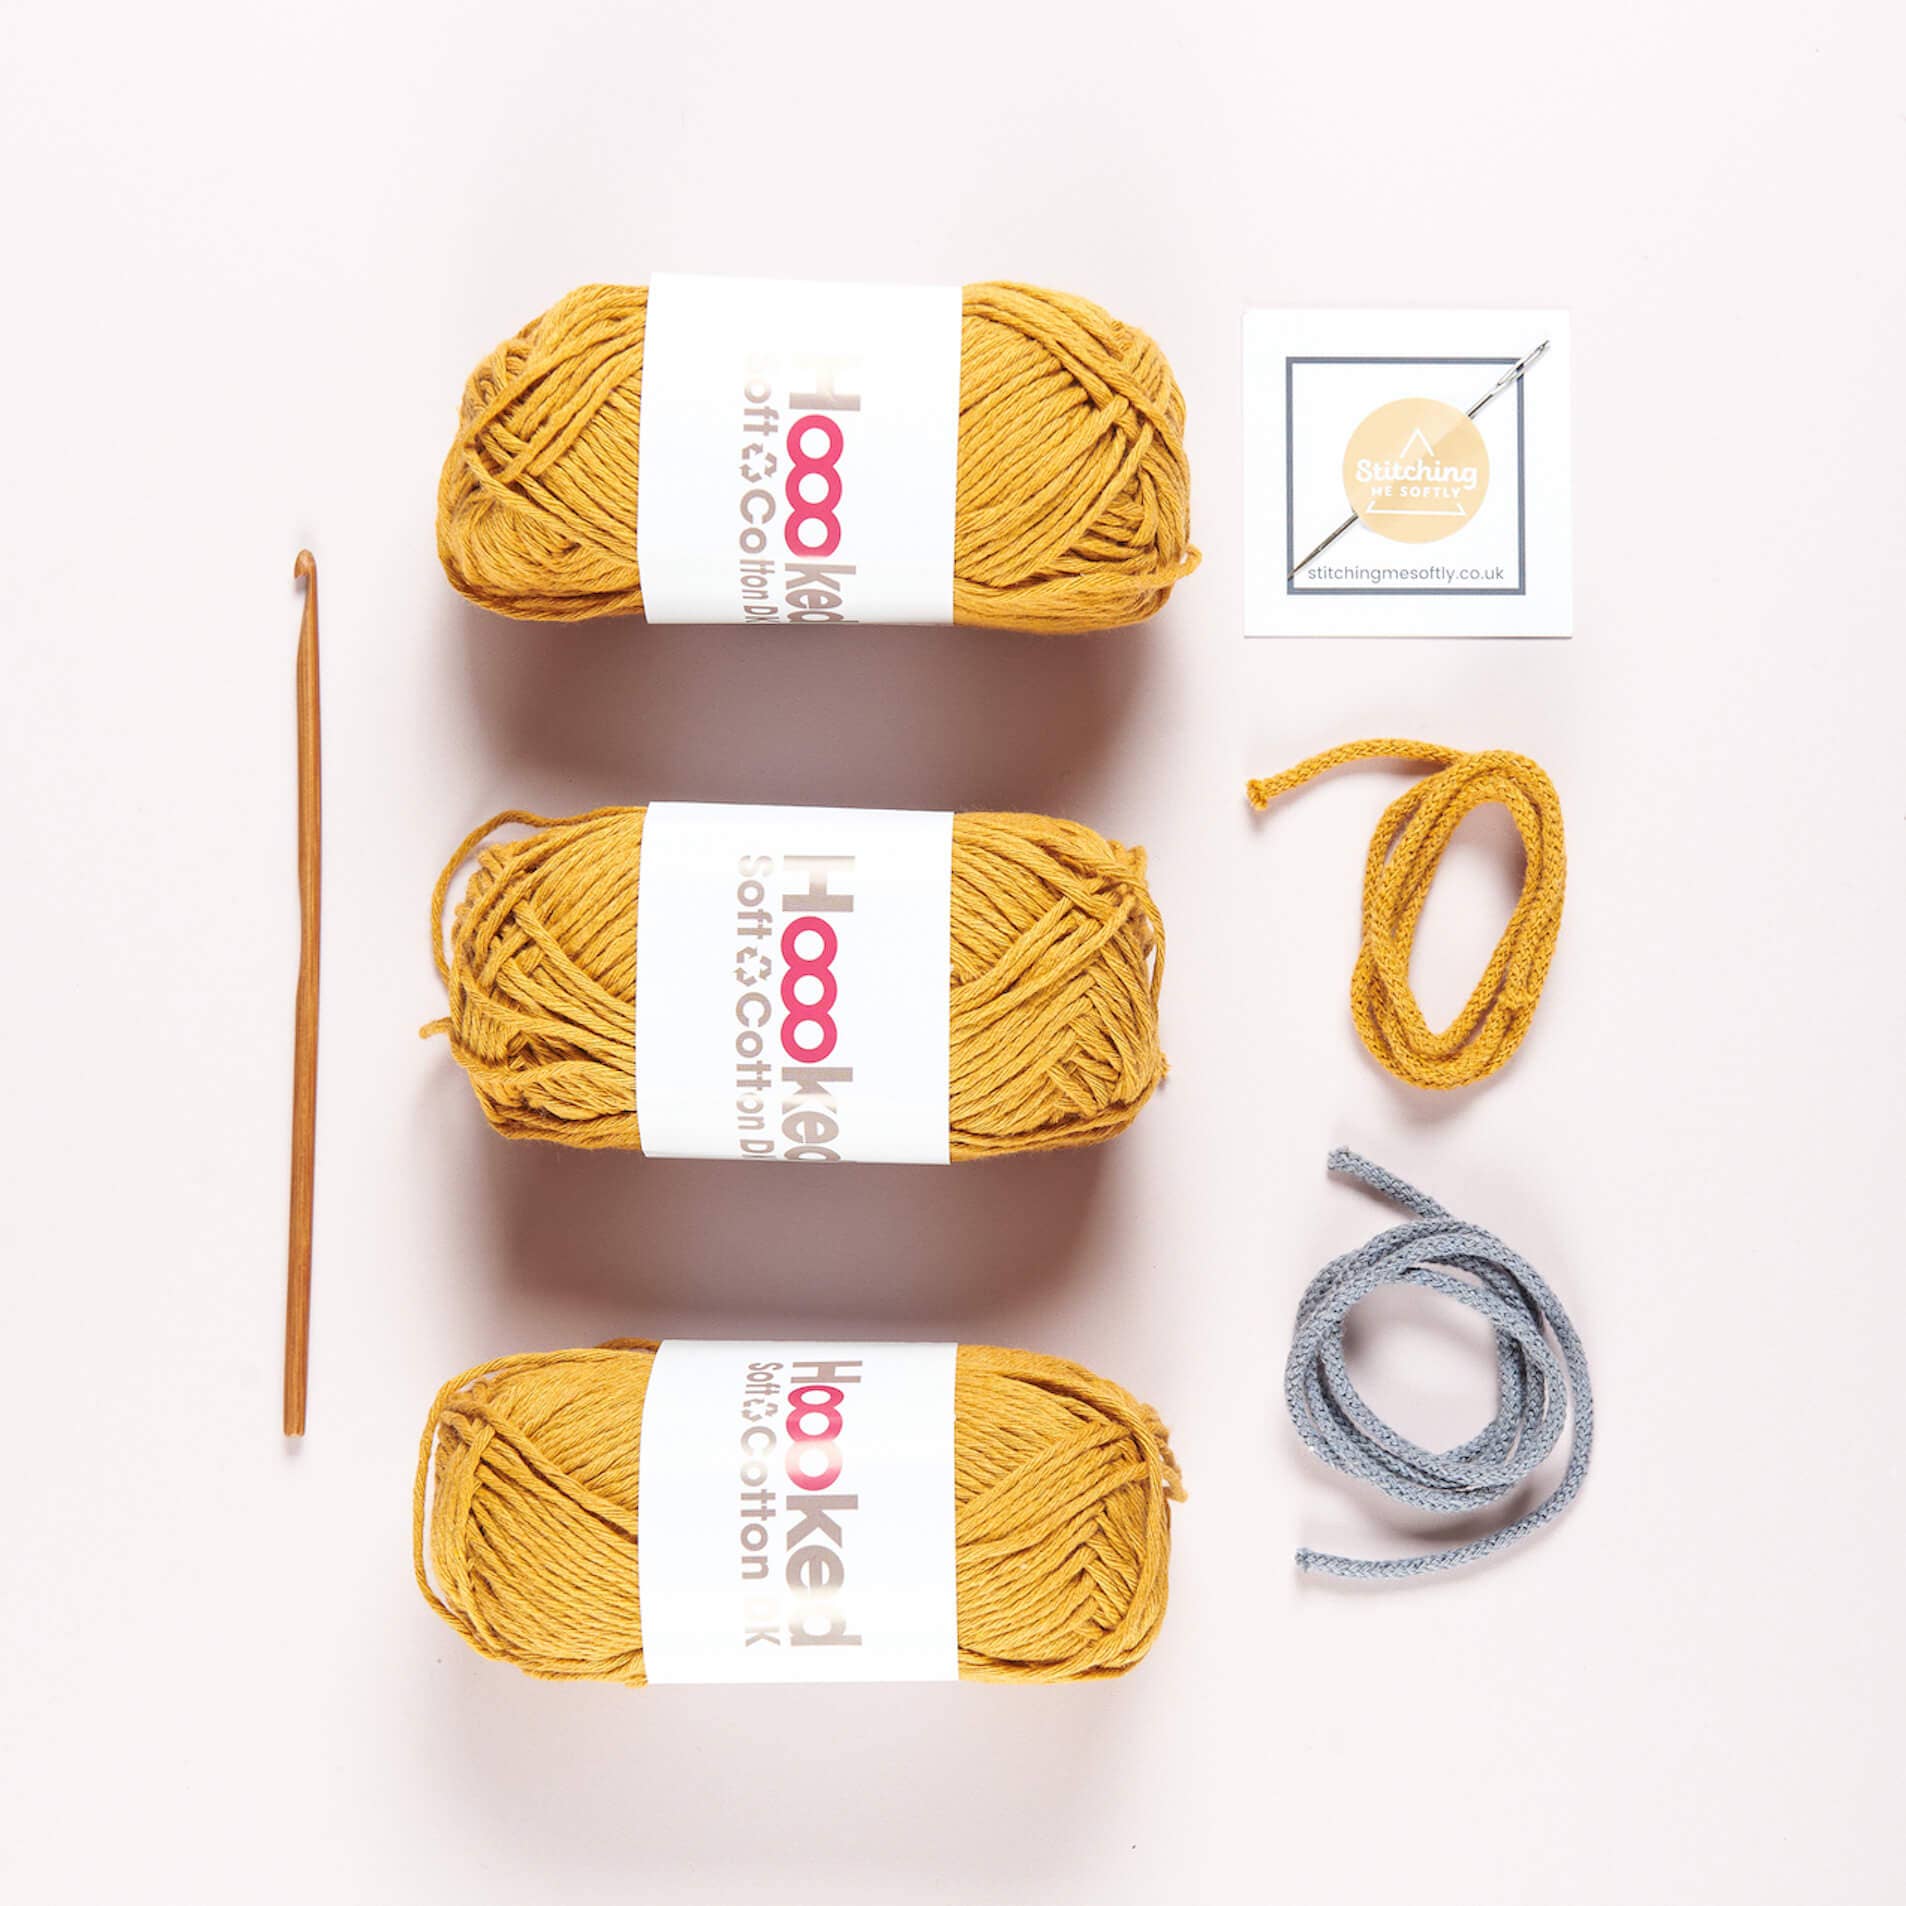 Stitching Me Softly - Friendship Bracelet Kit